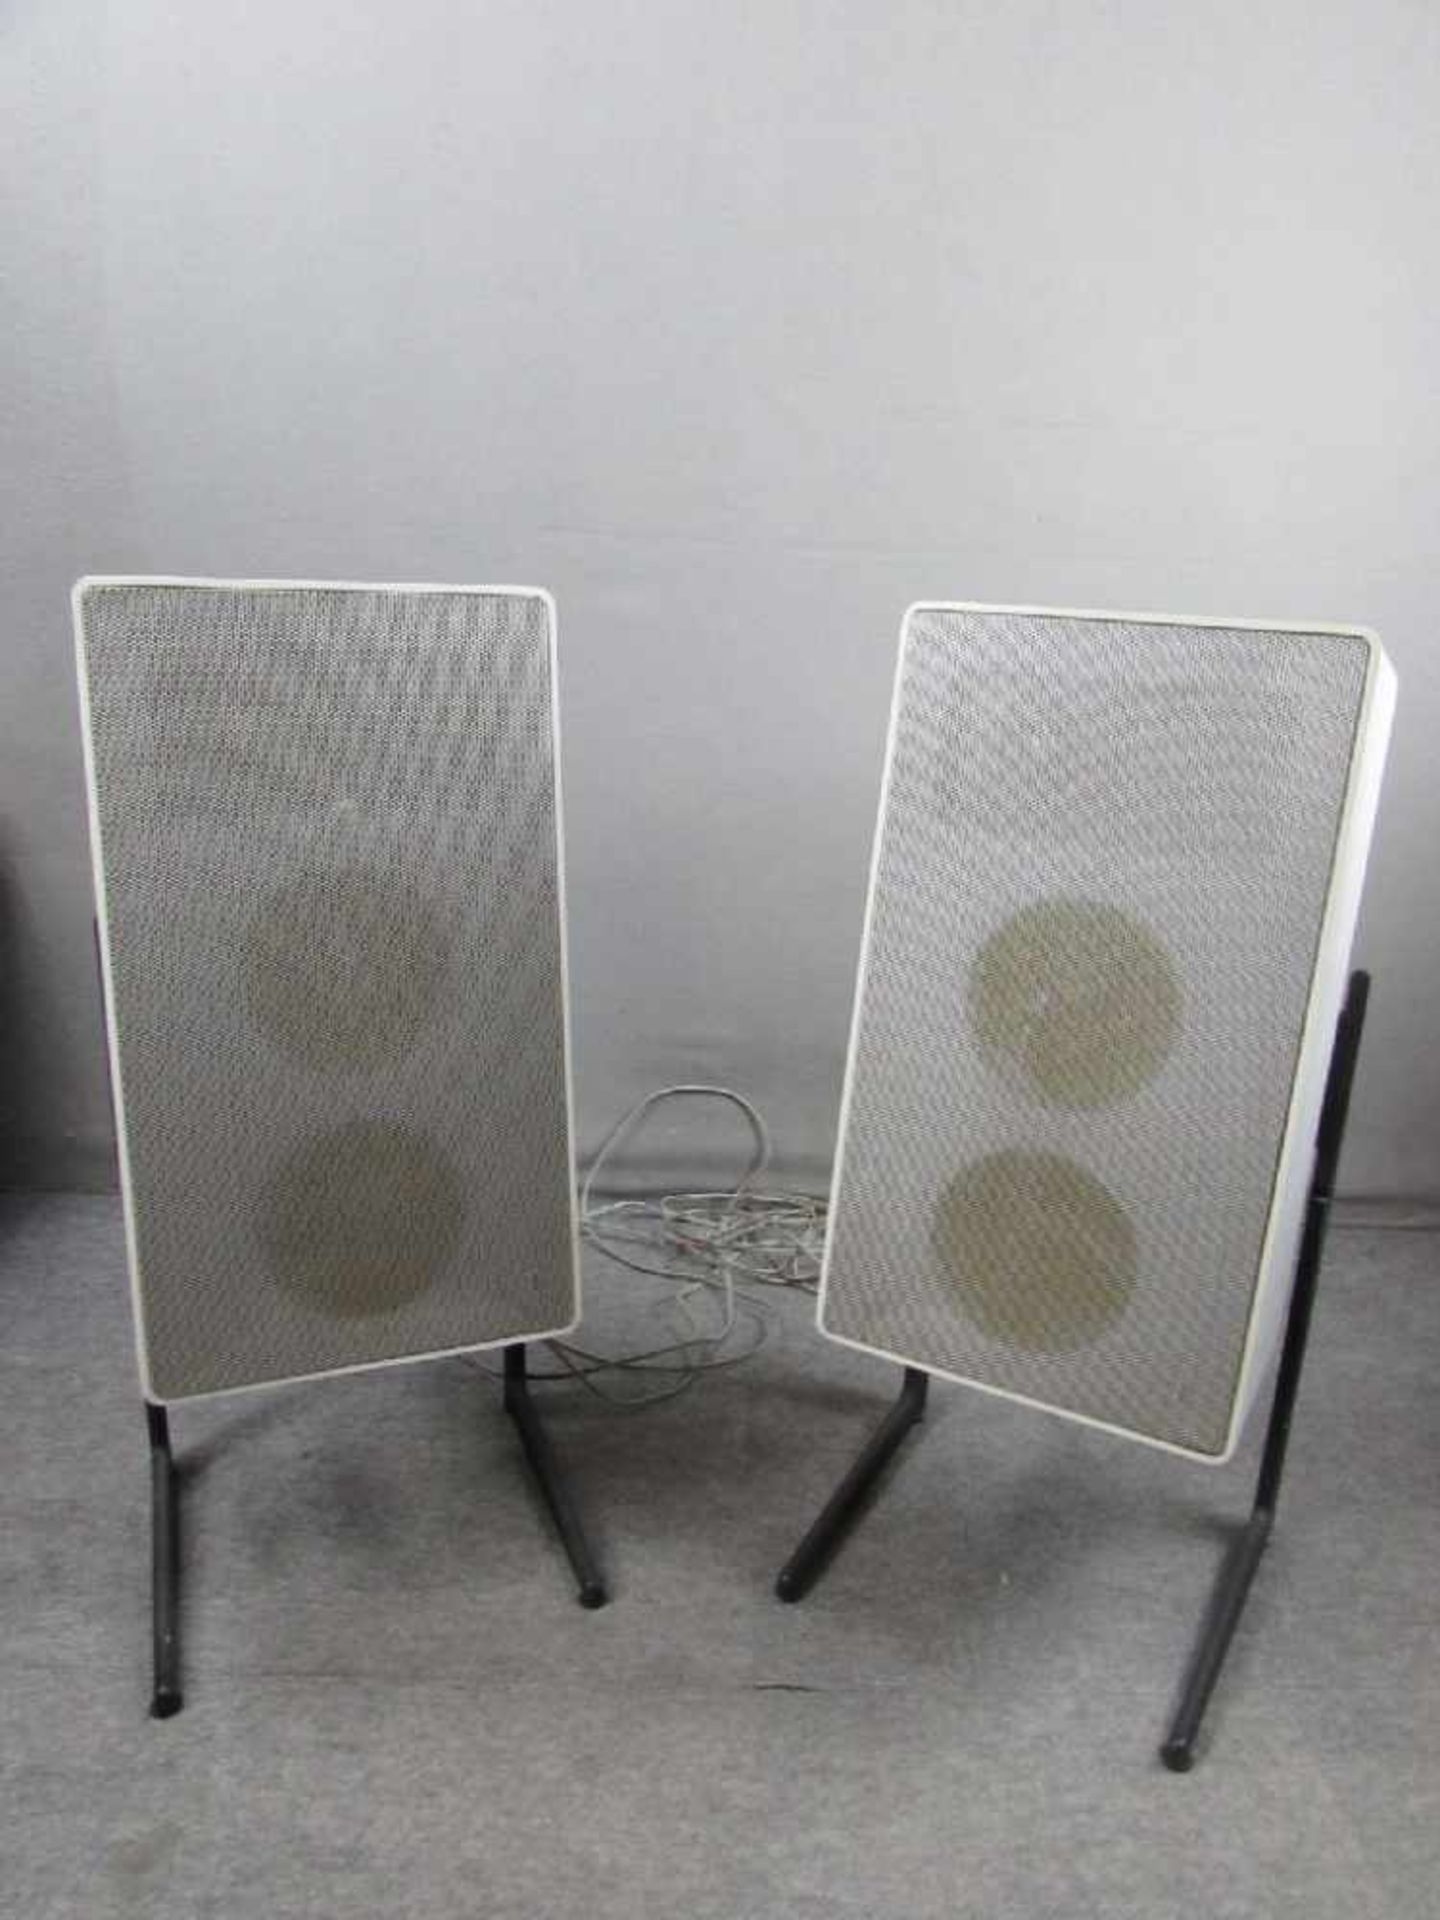 Zwei Lautsprecherboxen Hersteller Braun 70er Jahre auf passendem Gestell funktionstüchtig